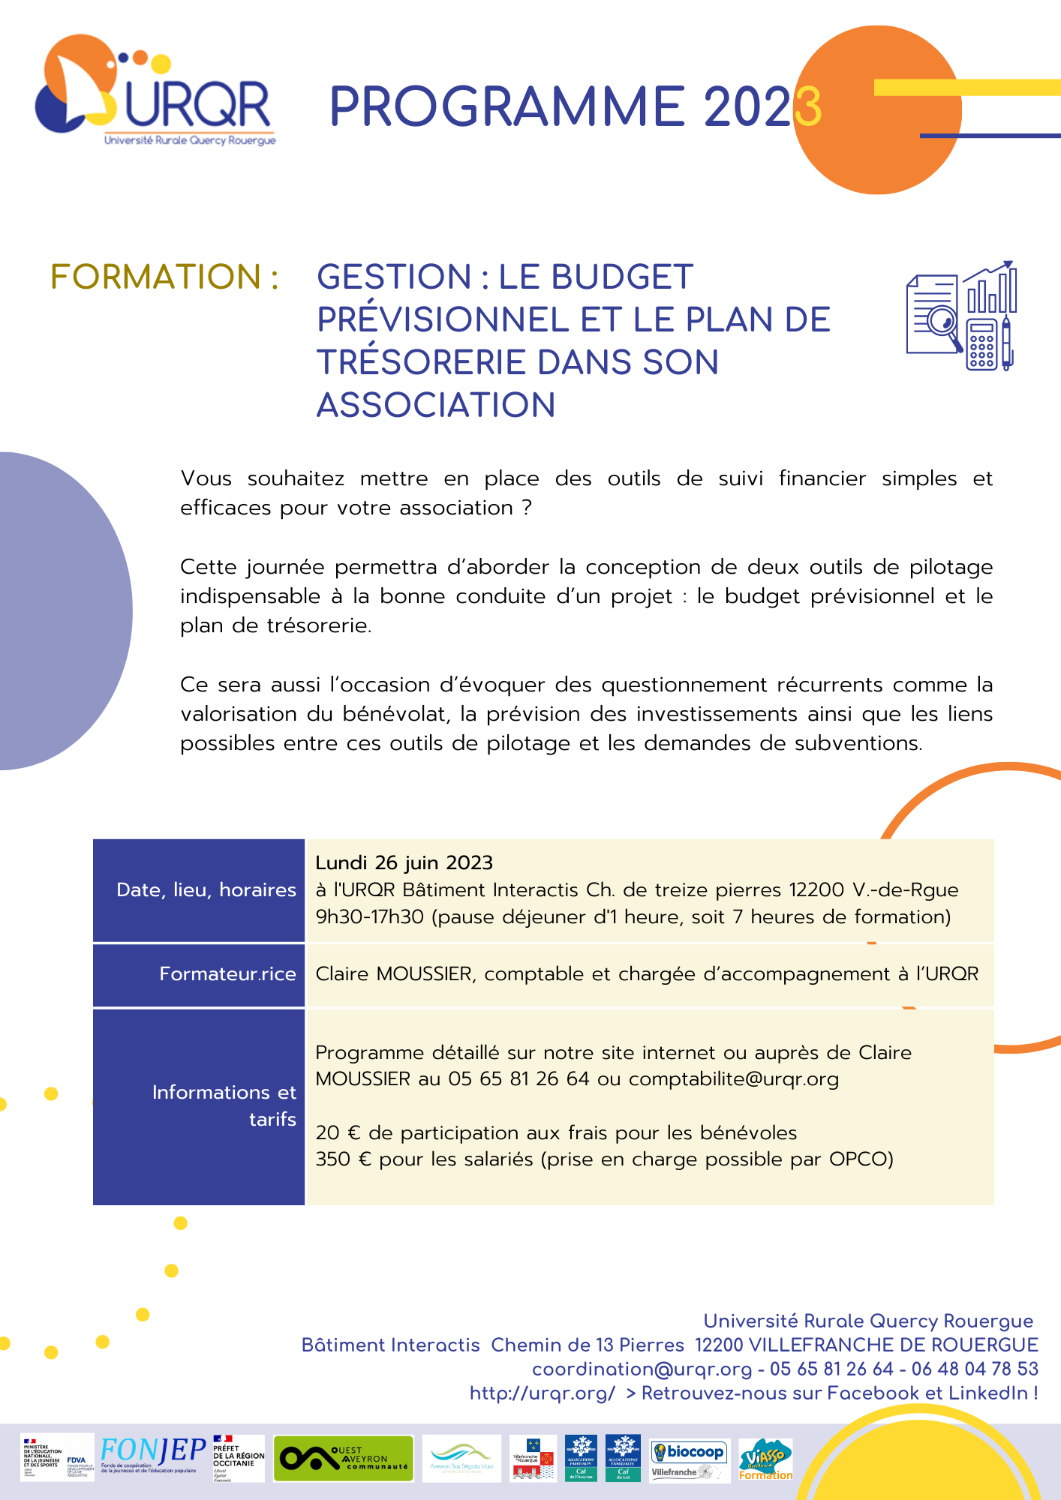 Formation Gestion : Le budget prévisionnel et le plan de trésorerie dans son association